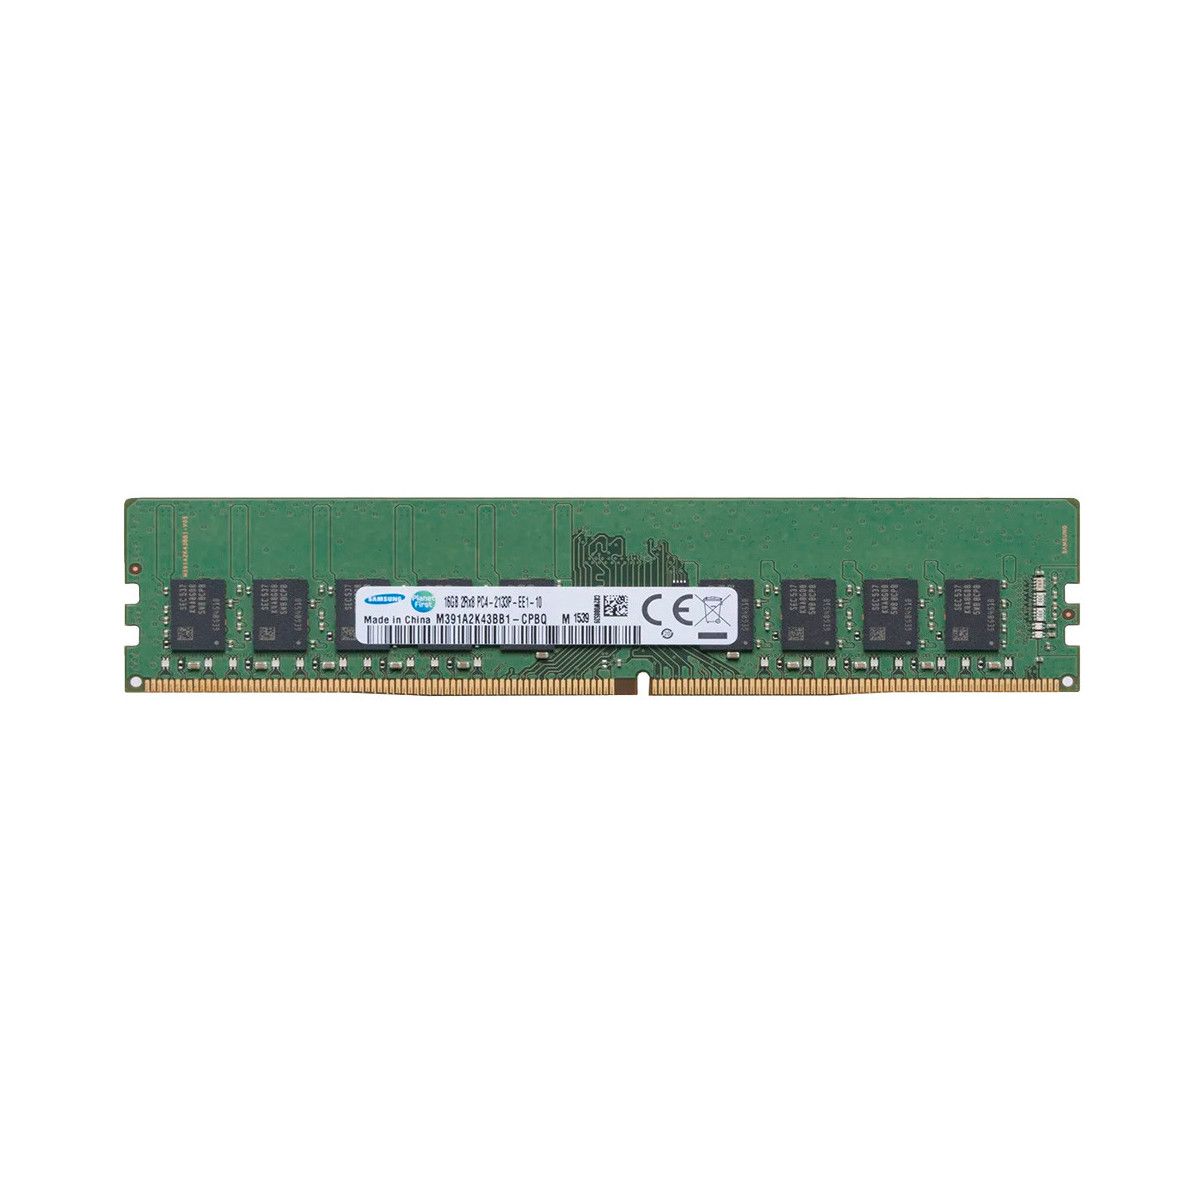 4X70G88332-MS -JA- Memstar 1x 16GB DDR4-2133 ECC UDIMM PC4-17000P-E